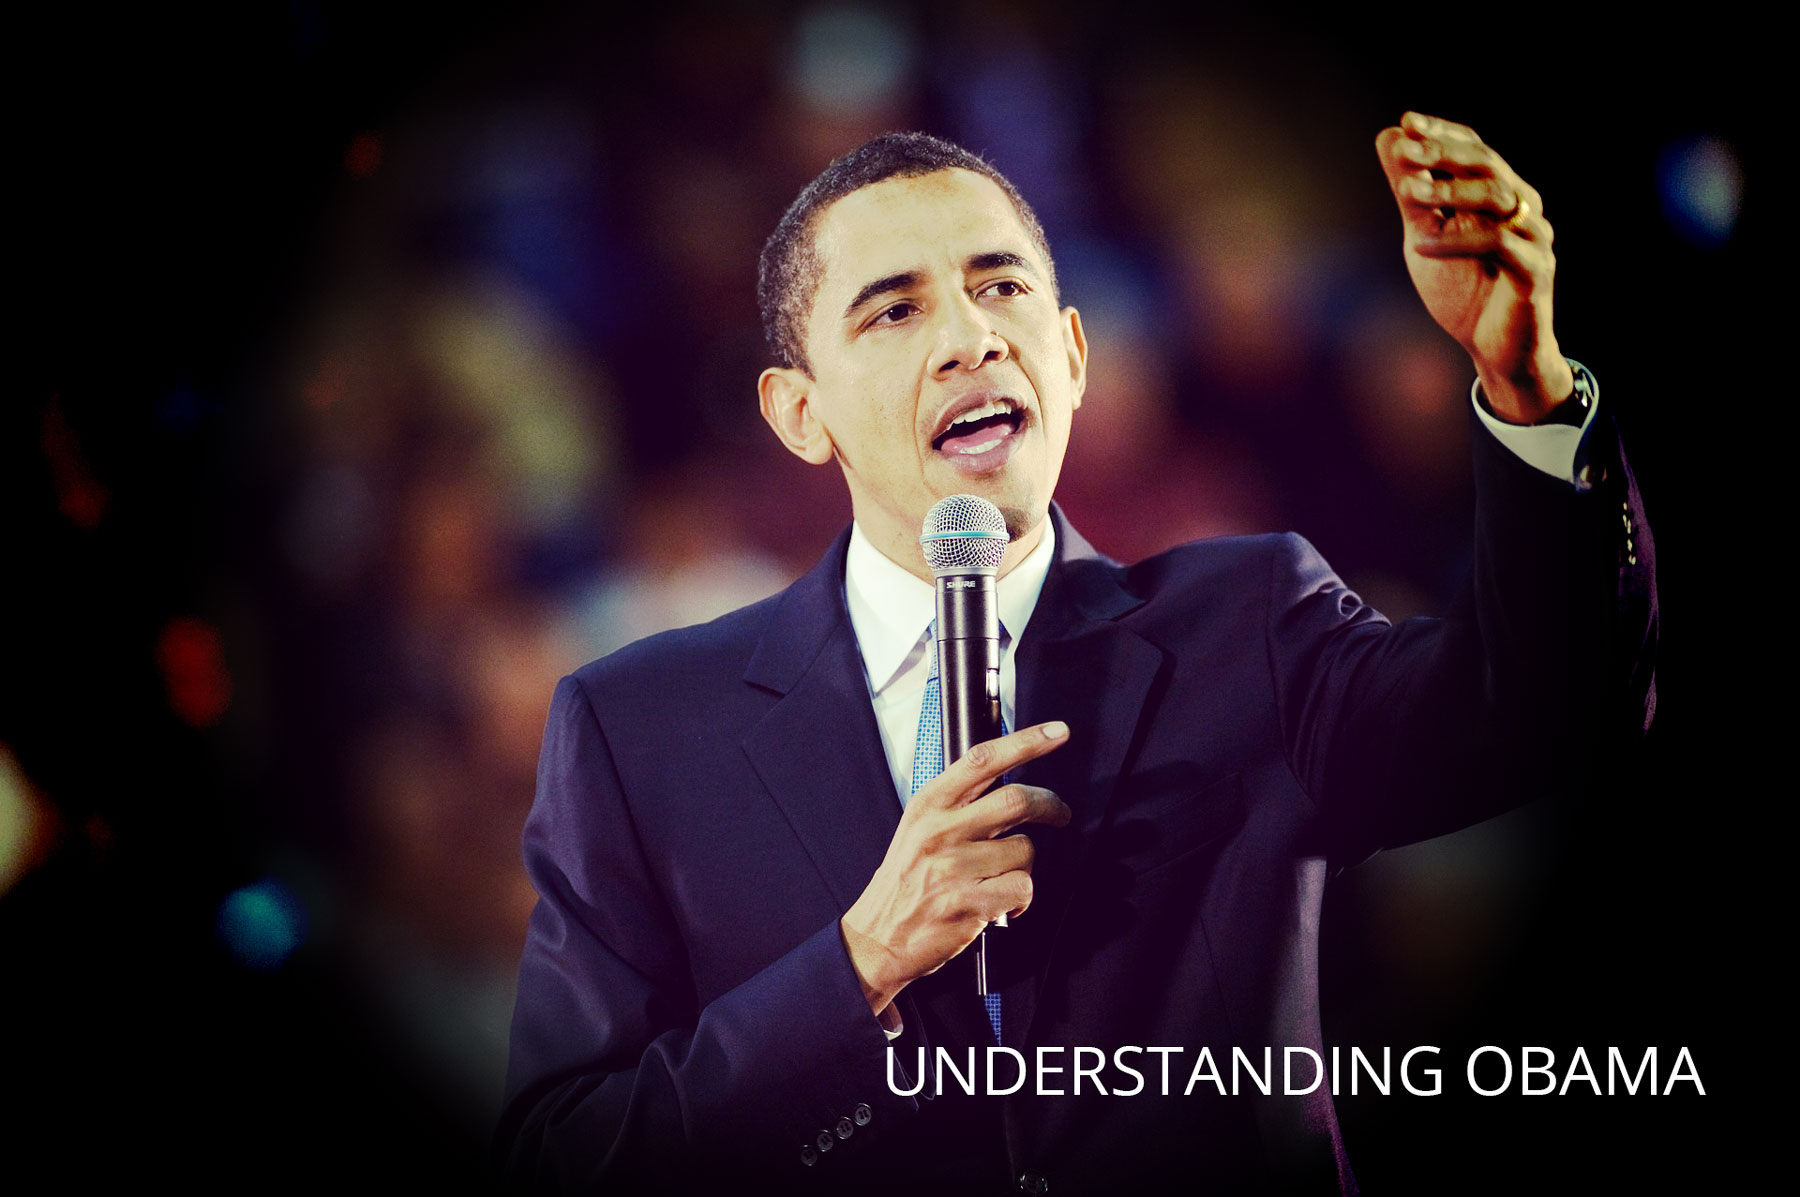 Understanding Obama